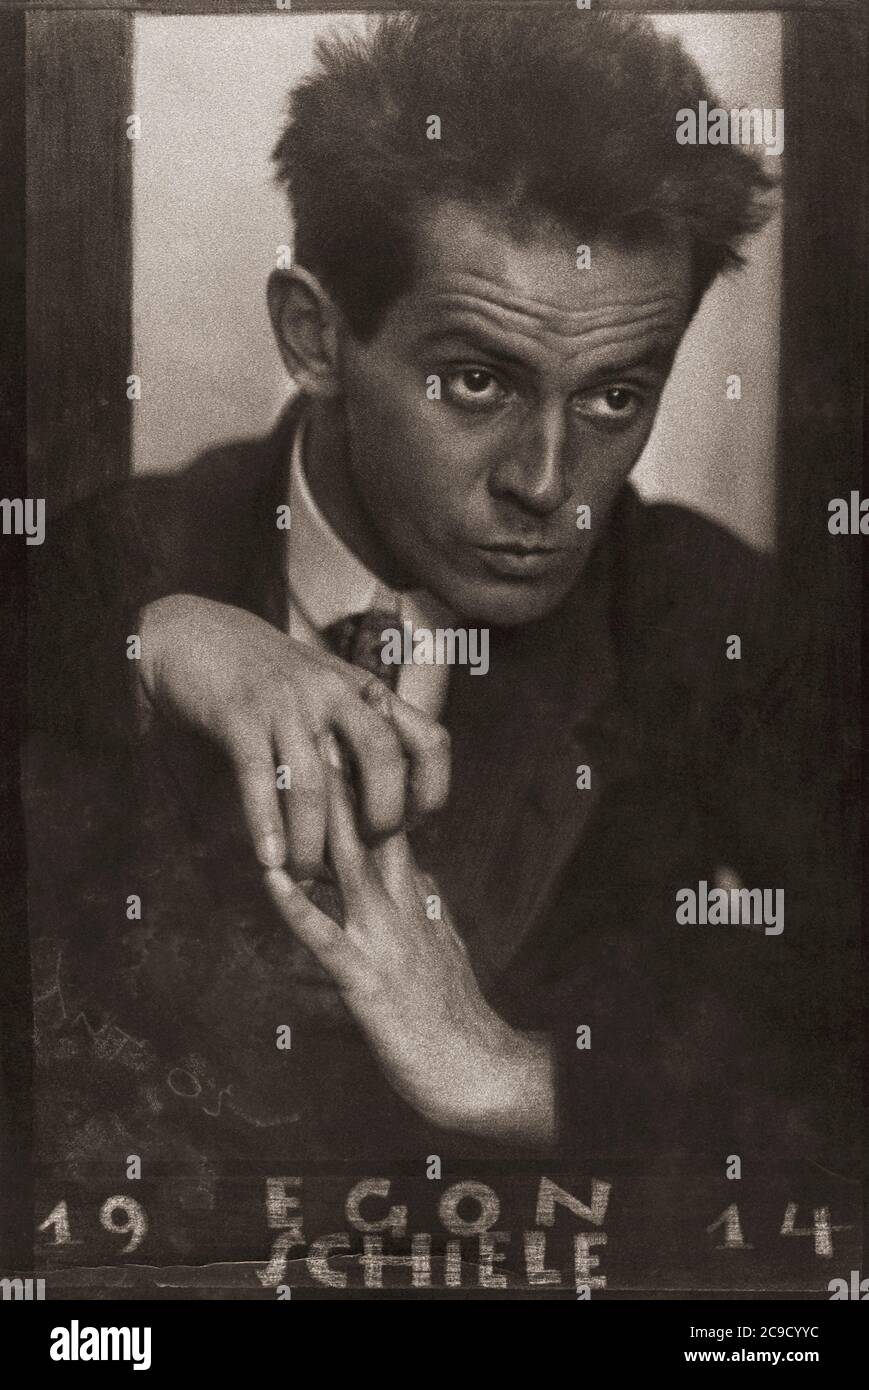 Egon Schiele, 1890 - 1918. Peintre autrichien. Après un portrait de 1914 réalisé par le photographe tchèque d'origine autrichienne Anton Josef Trčka. Trčka a signé son ouvrage "Antios". Dans cette photo, le pseudonyme est griffé grossièrement dans le coin inférieur gauche de l'image. Banque D'Images